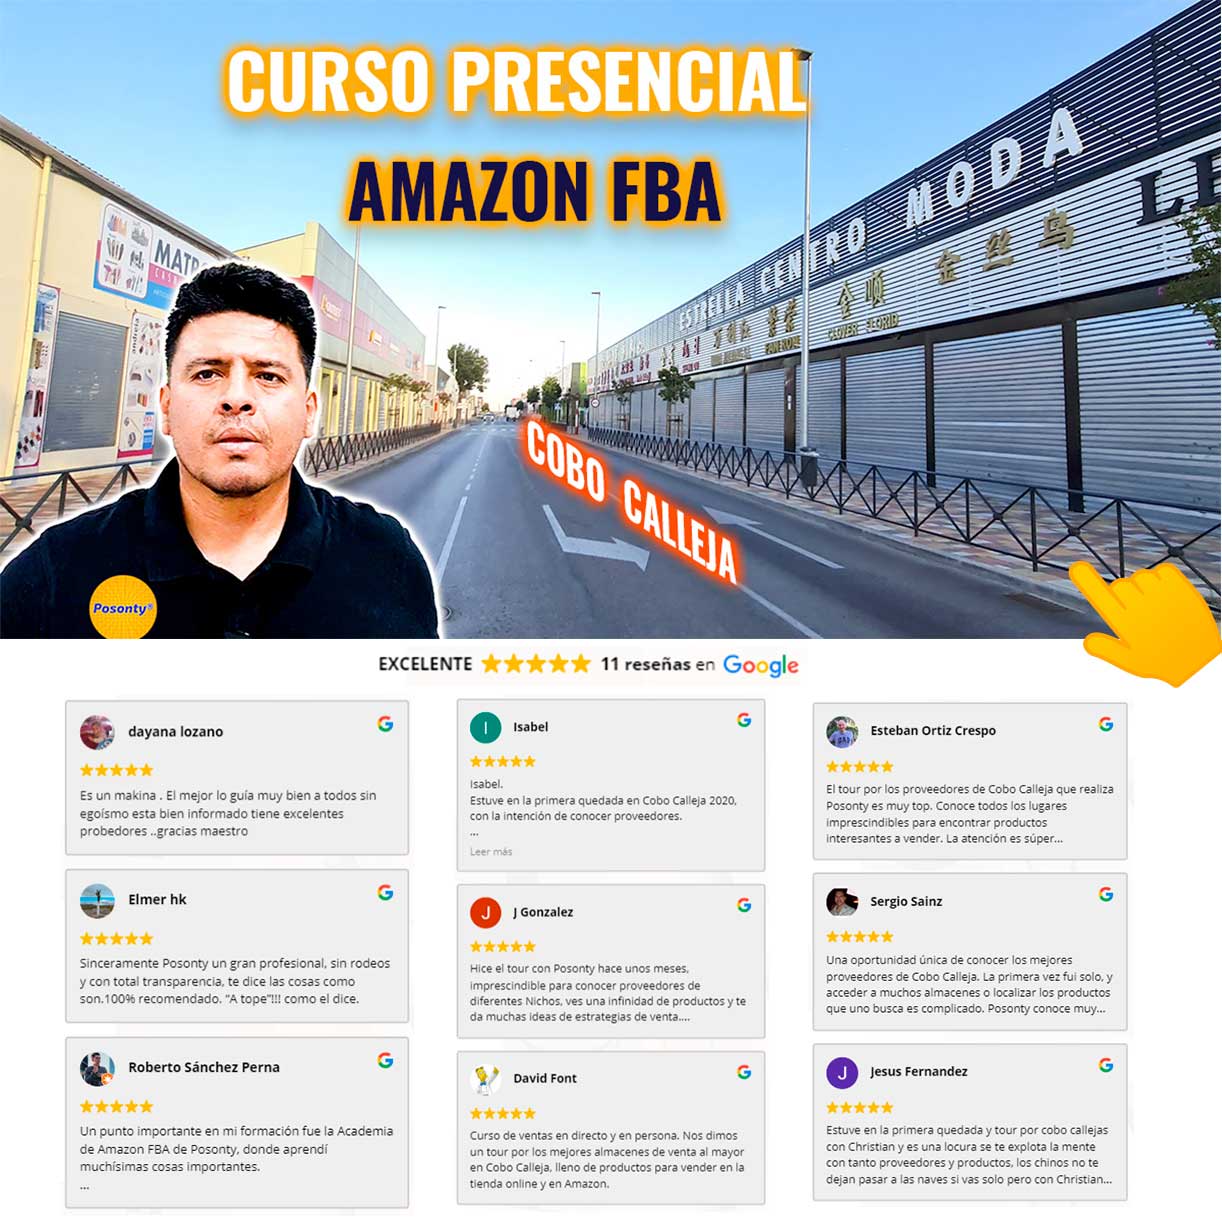 Curso presencial Amazon FBA Posonty